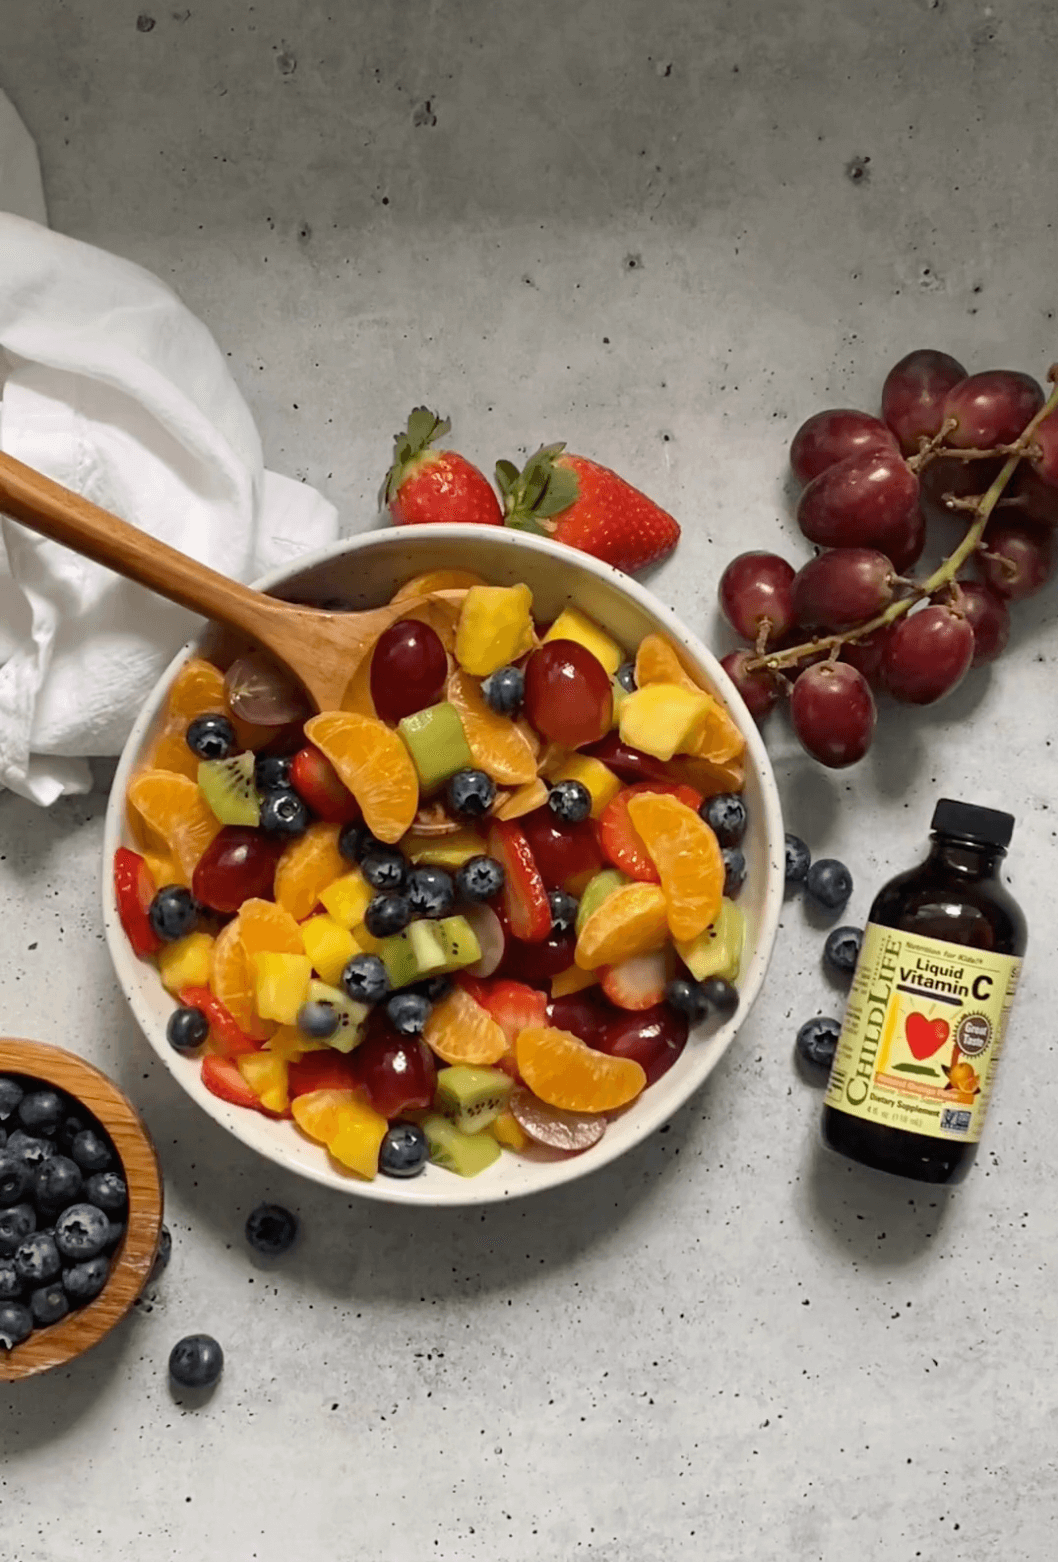 childlife essentials rainbow fruit salad recipe with vitamin C for kids